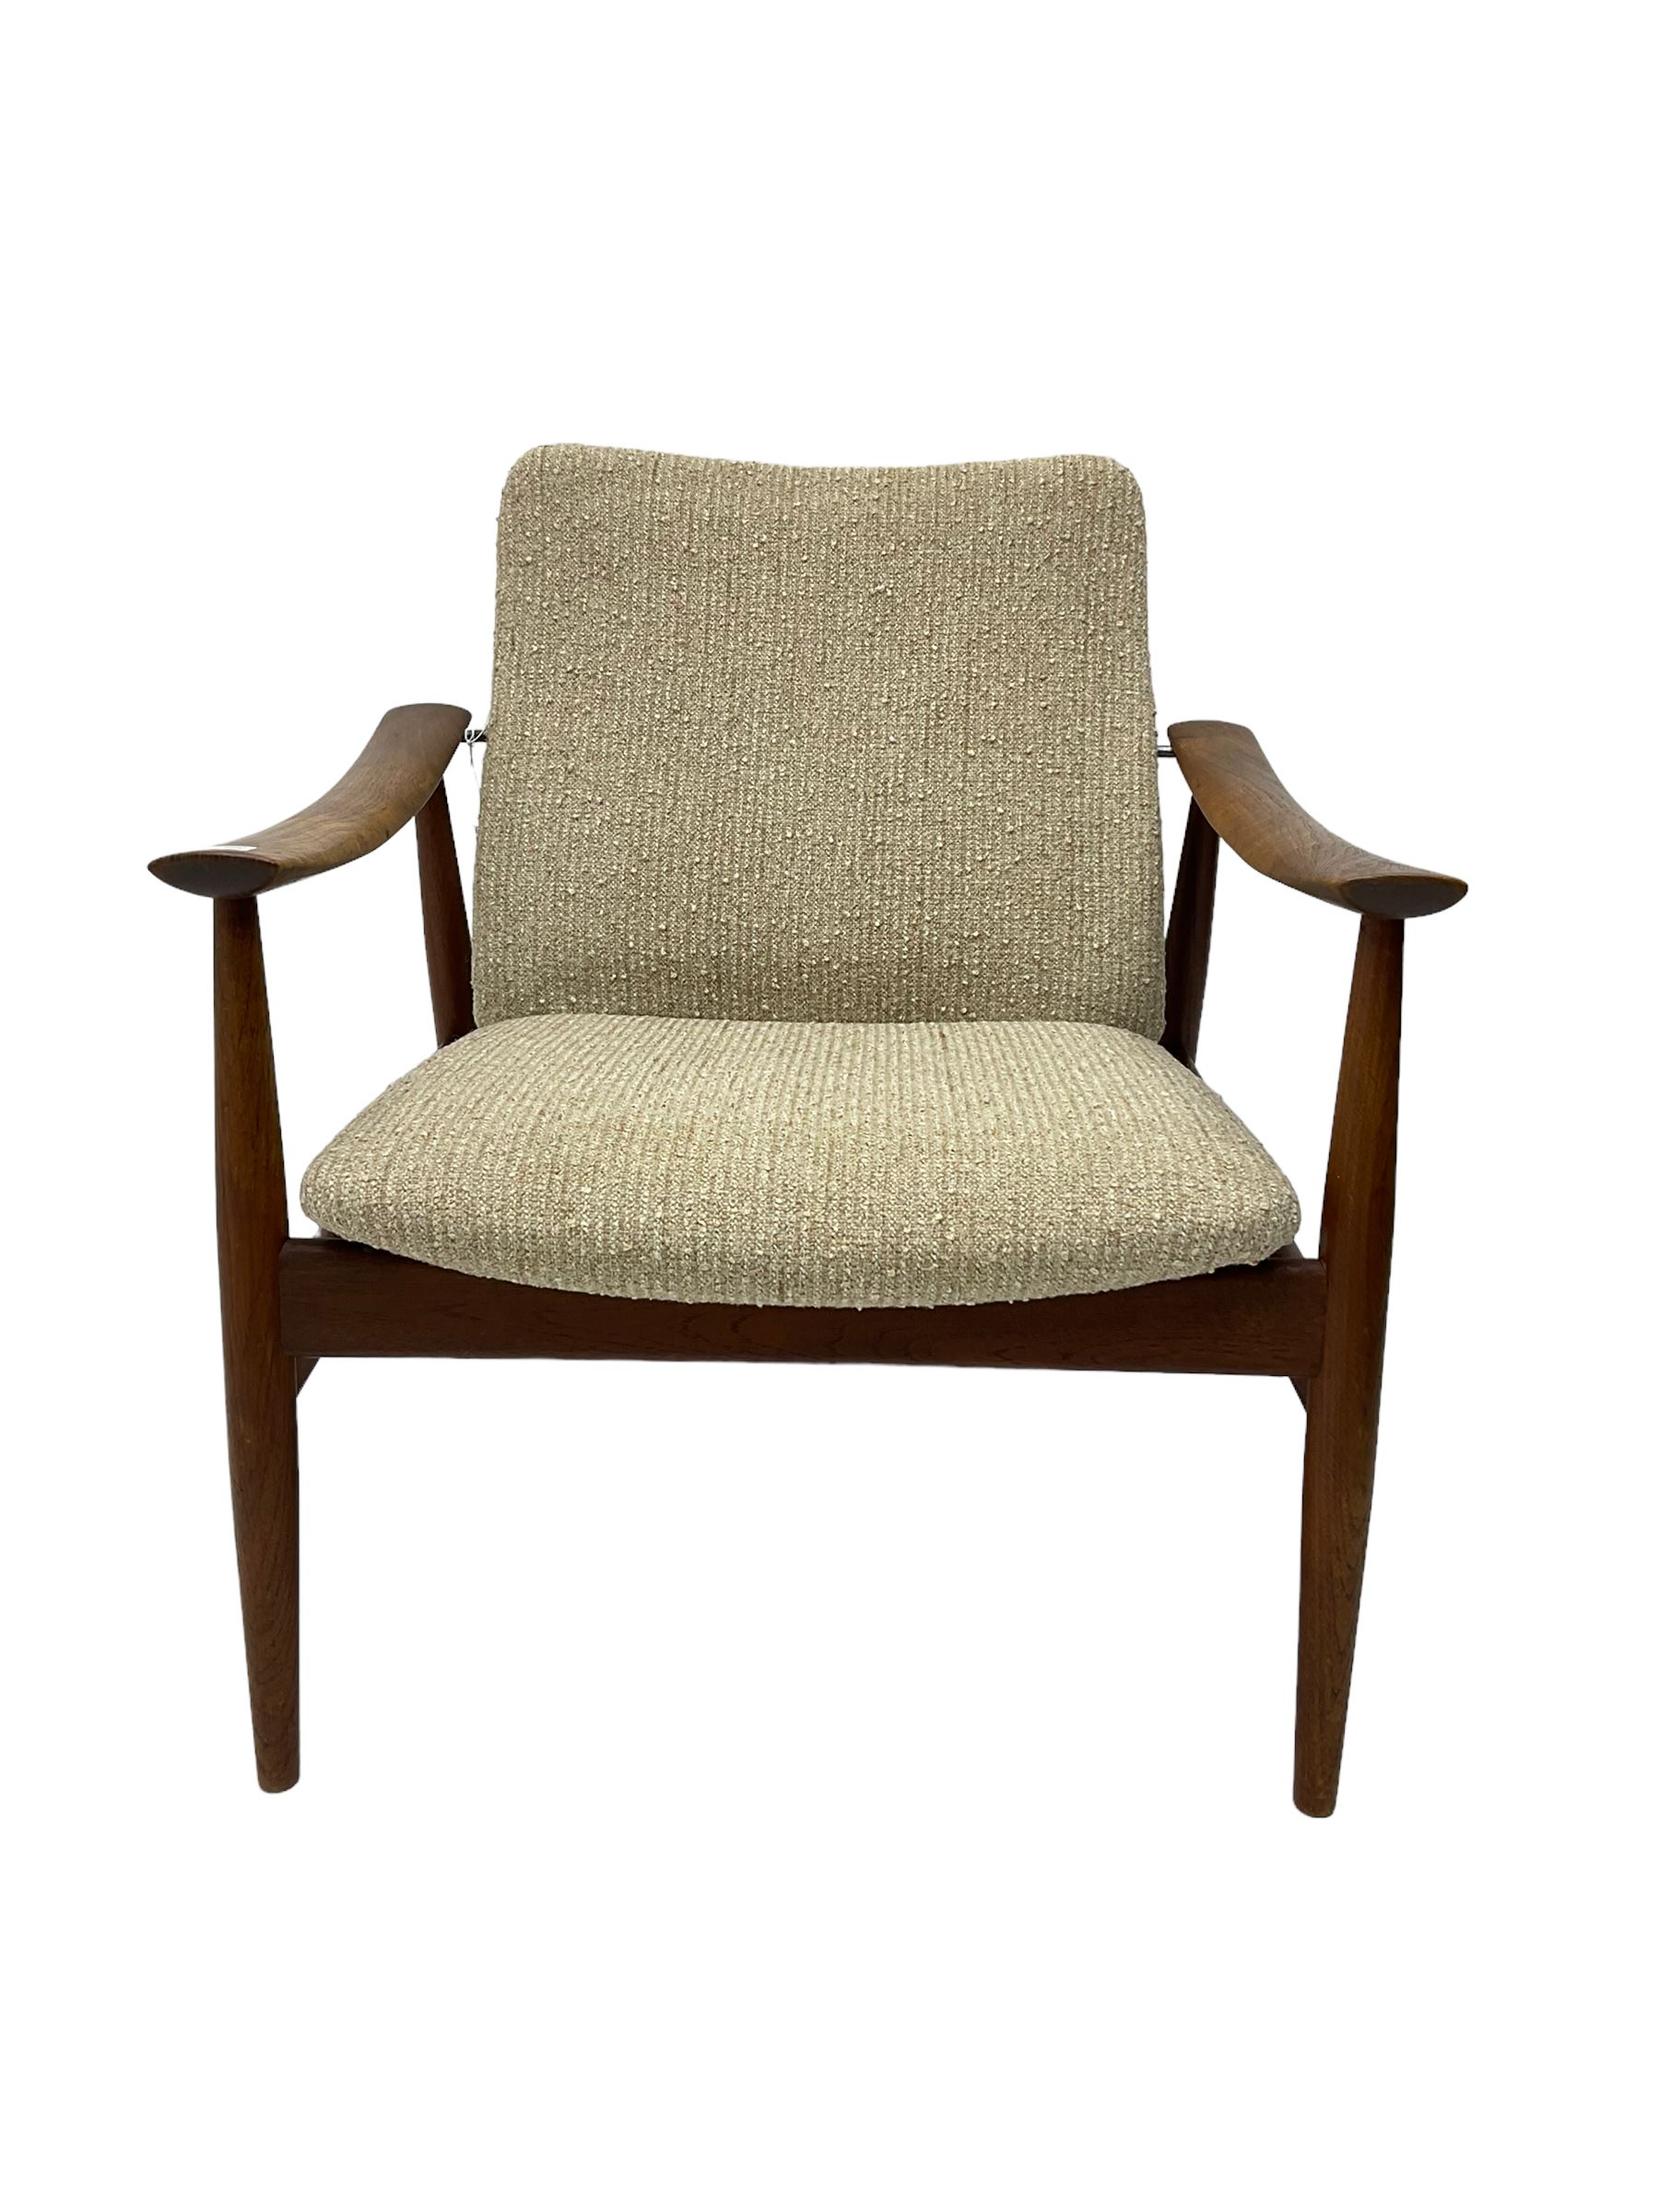 Finn Juhl for France & Son - 'model 138' mid-20th century teak easy chair upholstered in beige fabri - Image 8 of 14